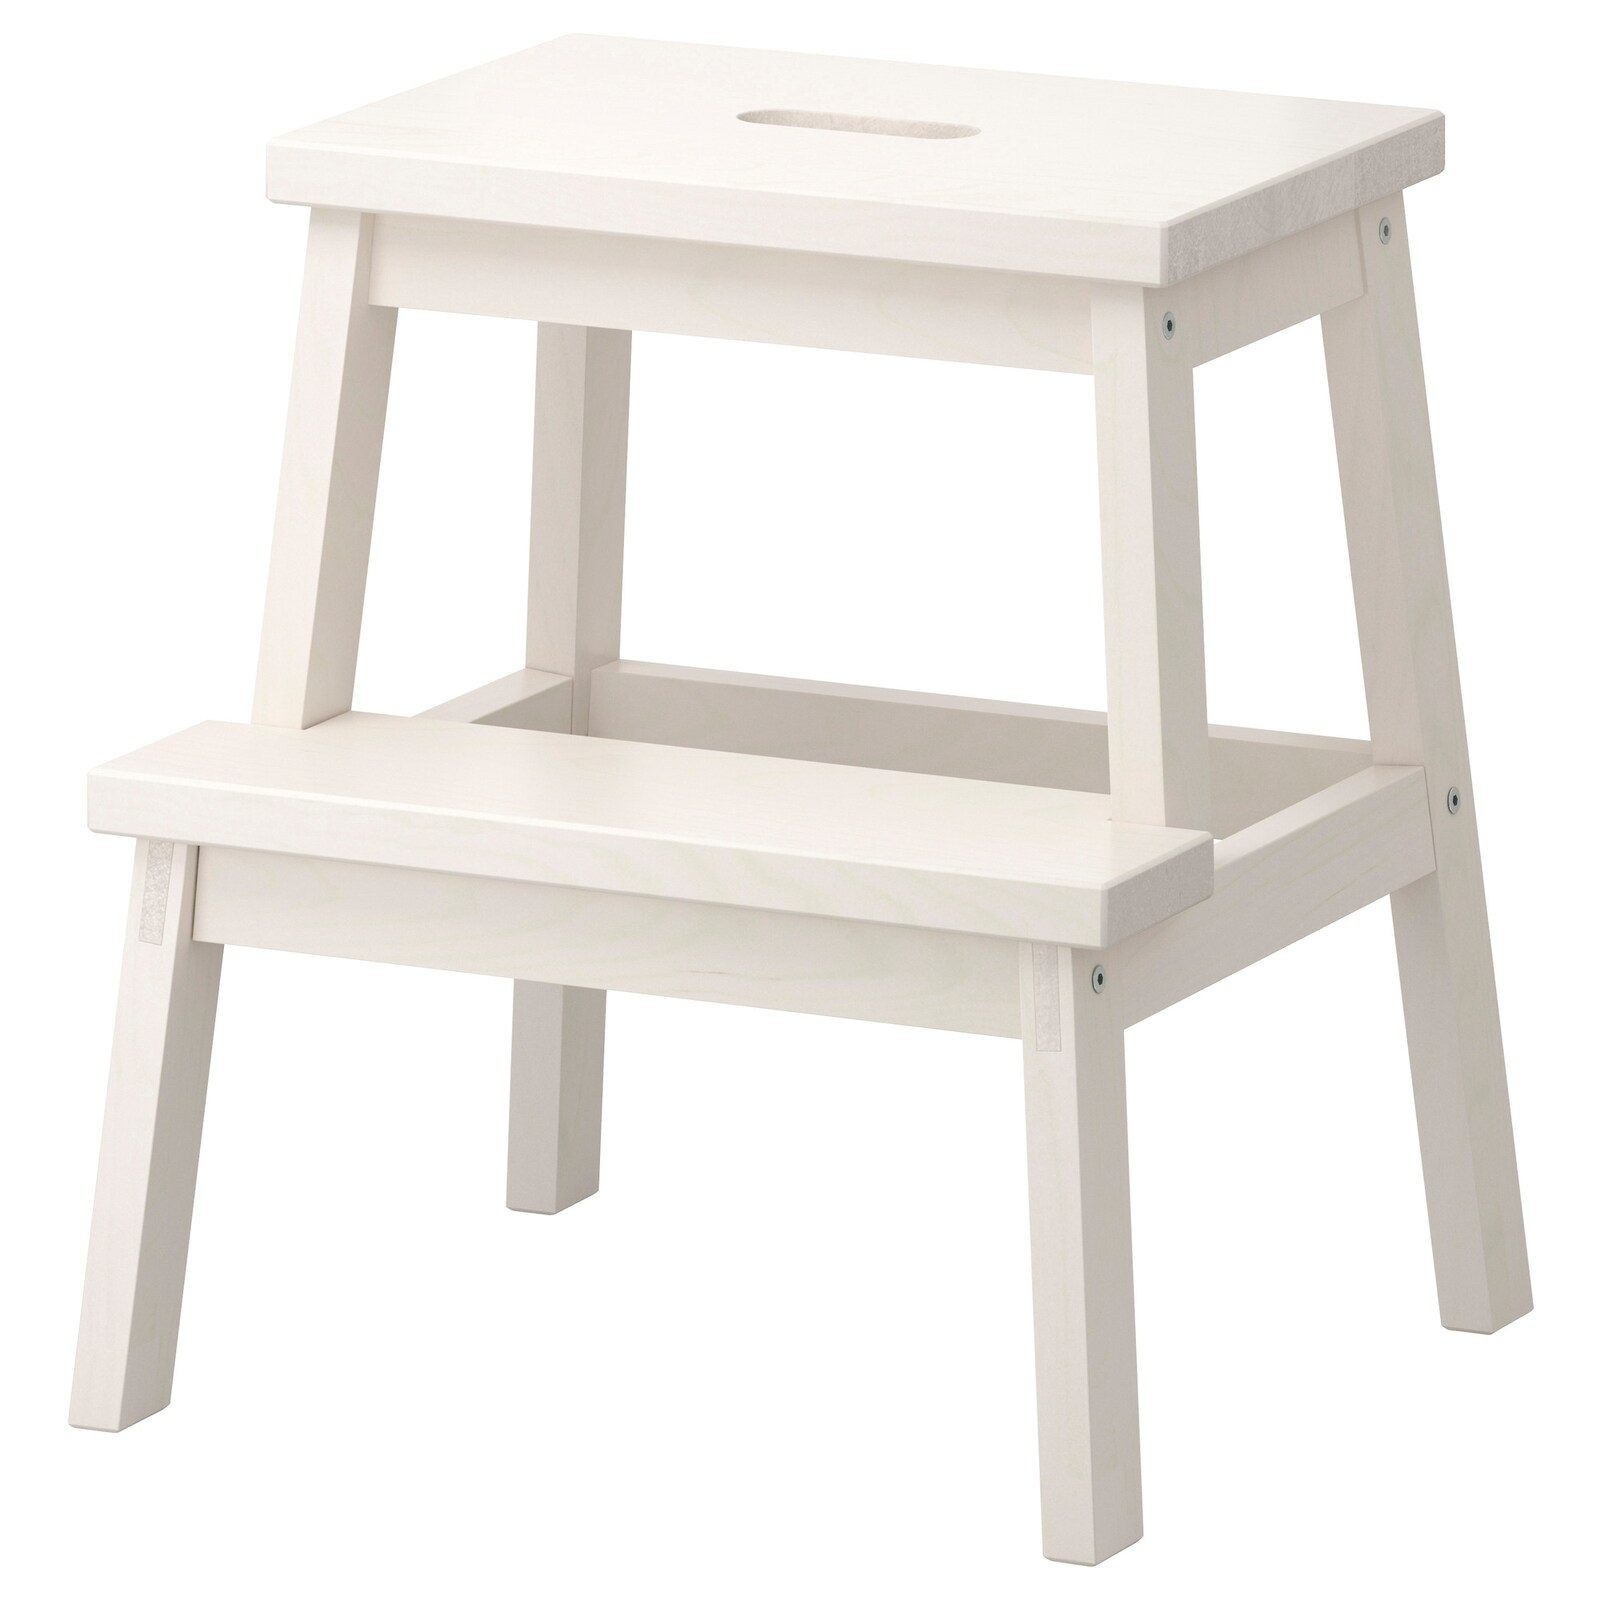 bekvaem-step-stool-white__0122140_PE278505_S5.JPG